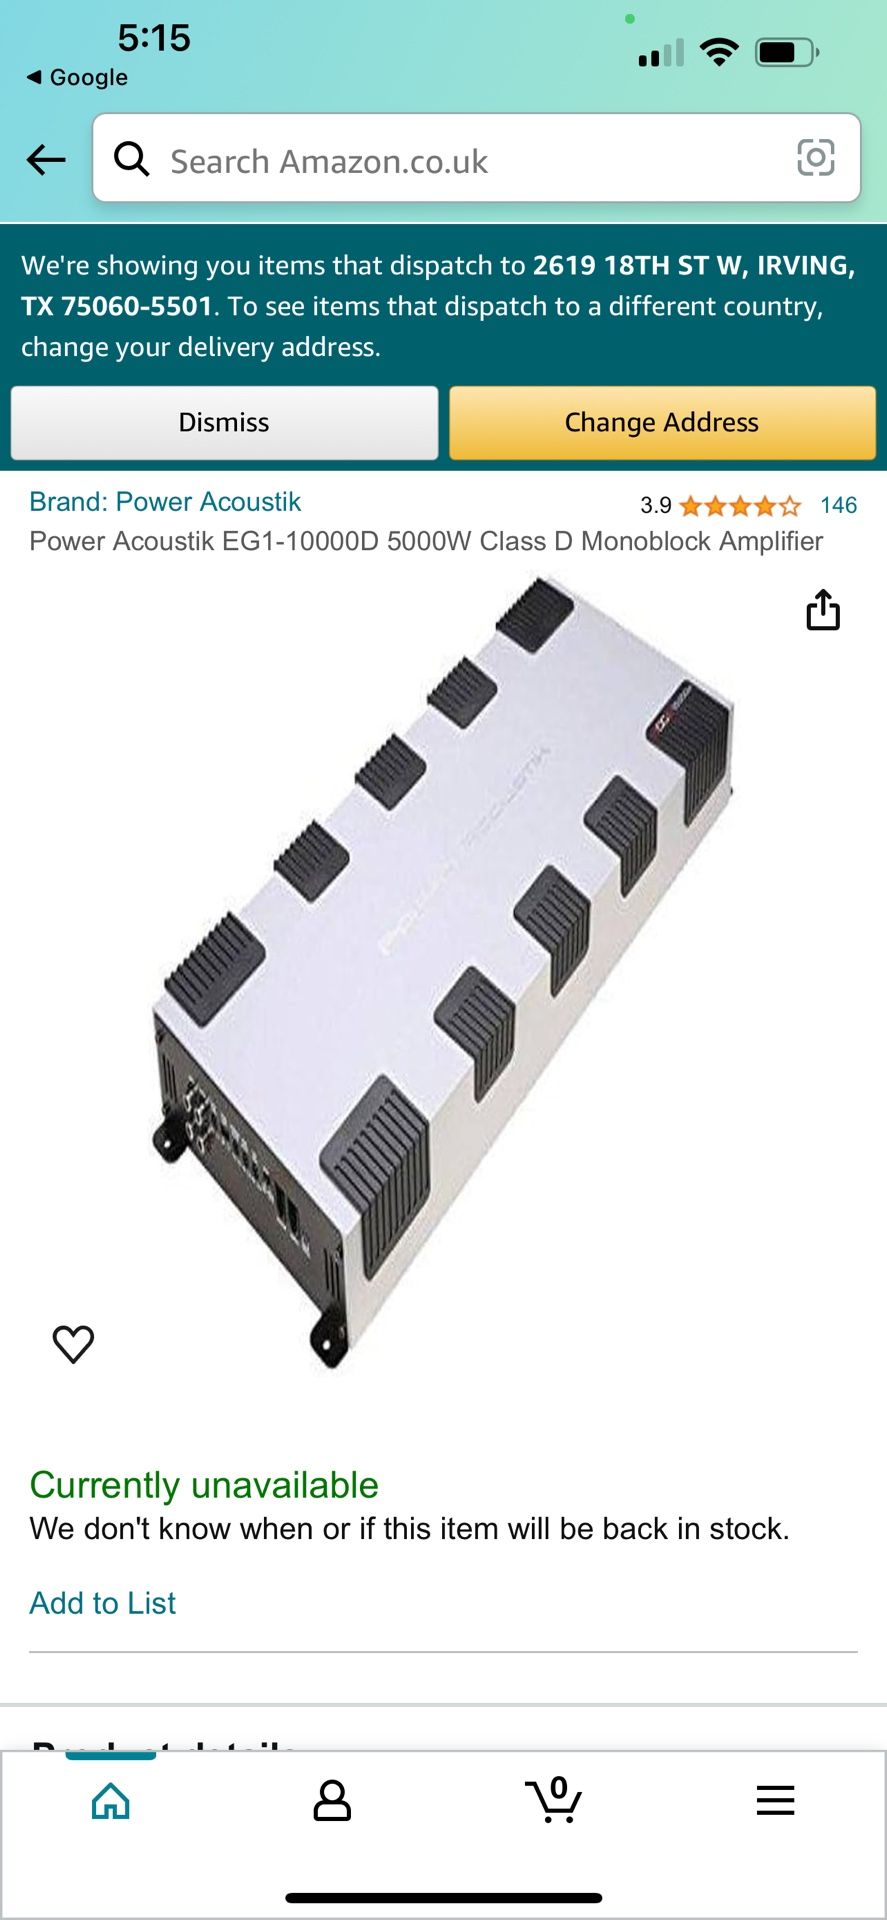 Power Acoustik EG1-10000D 5000W Class D Monoblock Amplifier